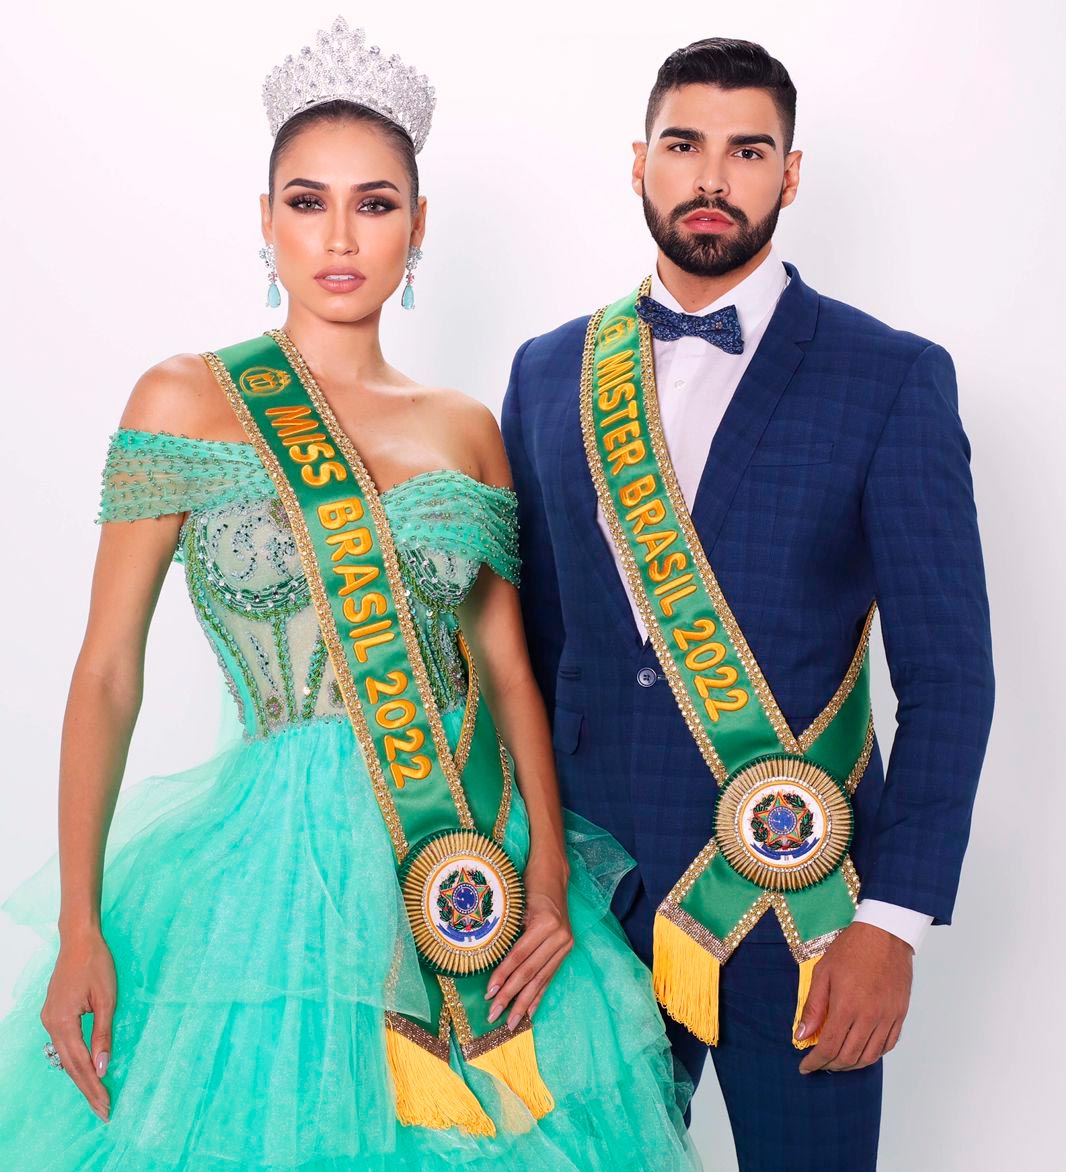 Paulo Roberto e Tatiana Bertoncini são eleitos Miss e Mister Brasil 2022
